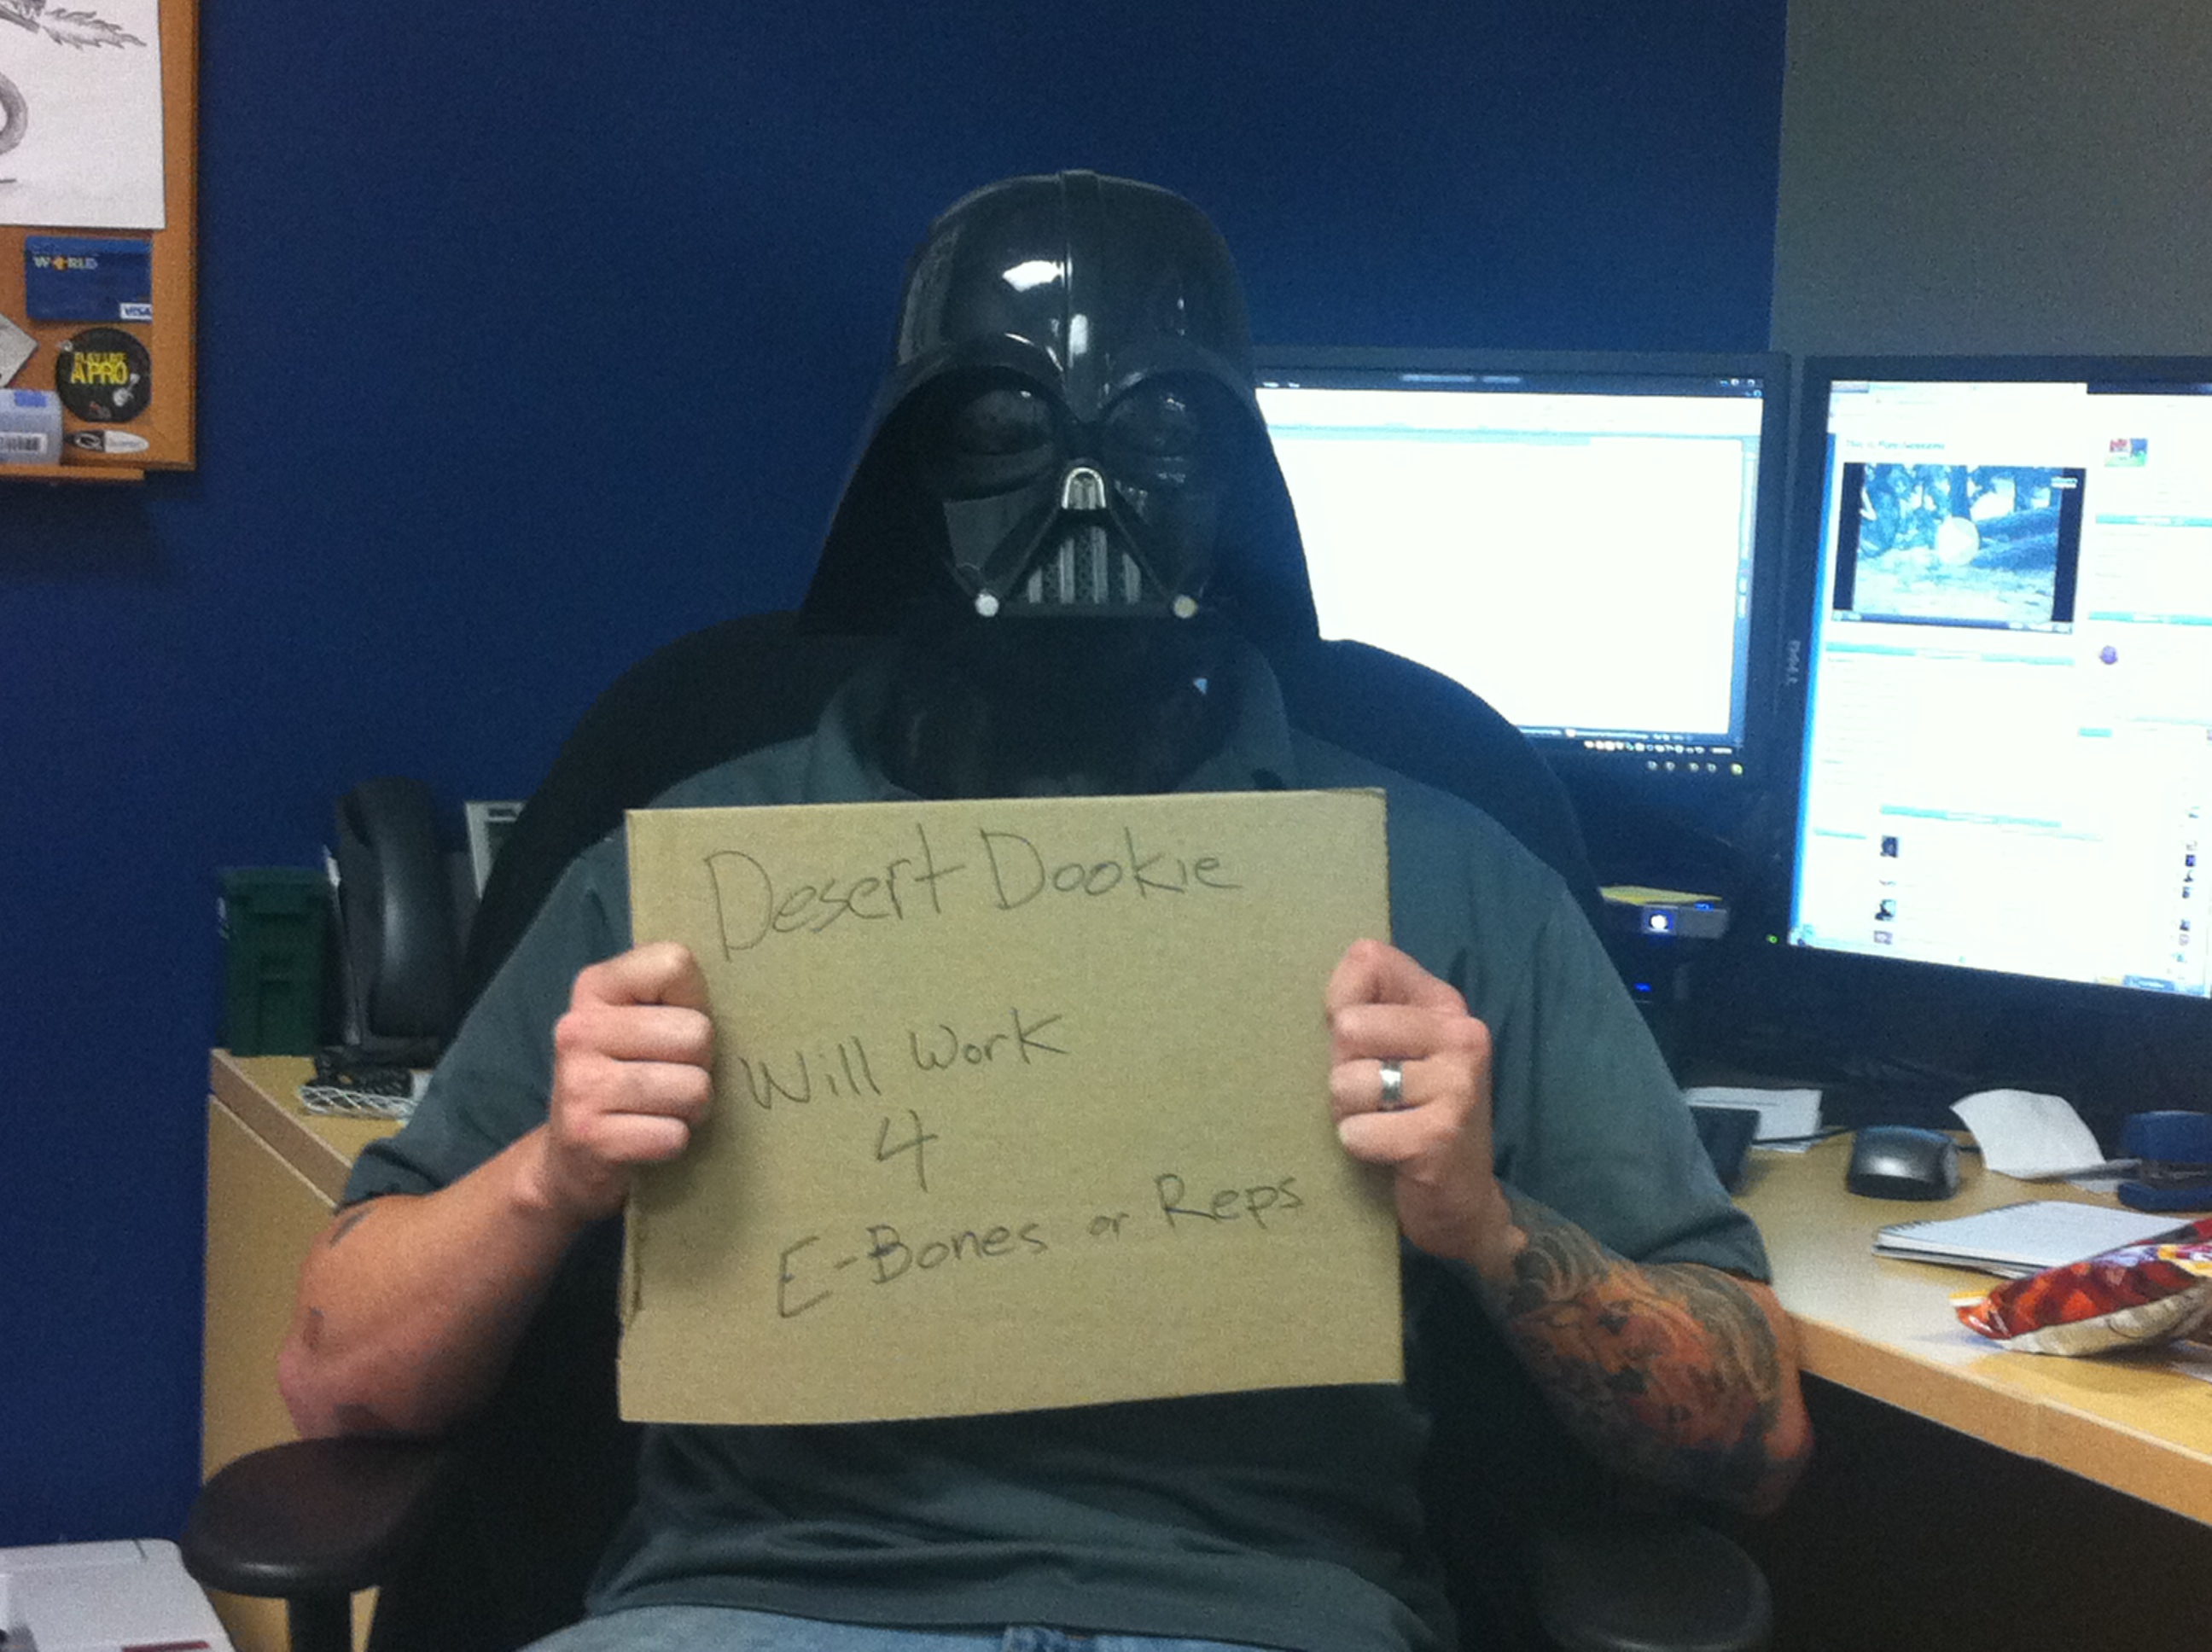 Vader at work